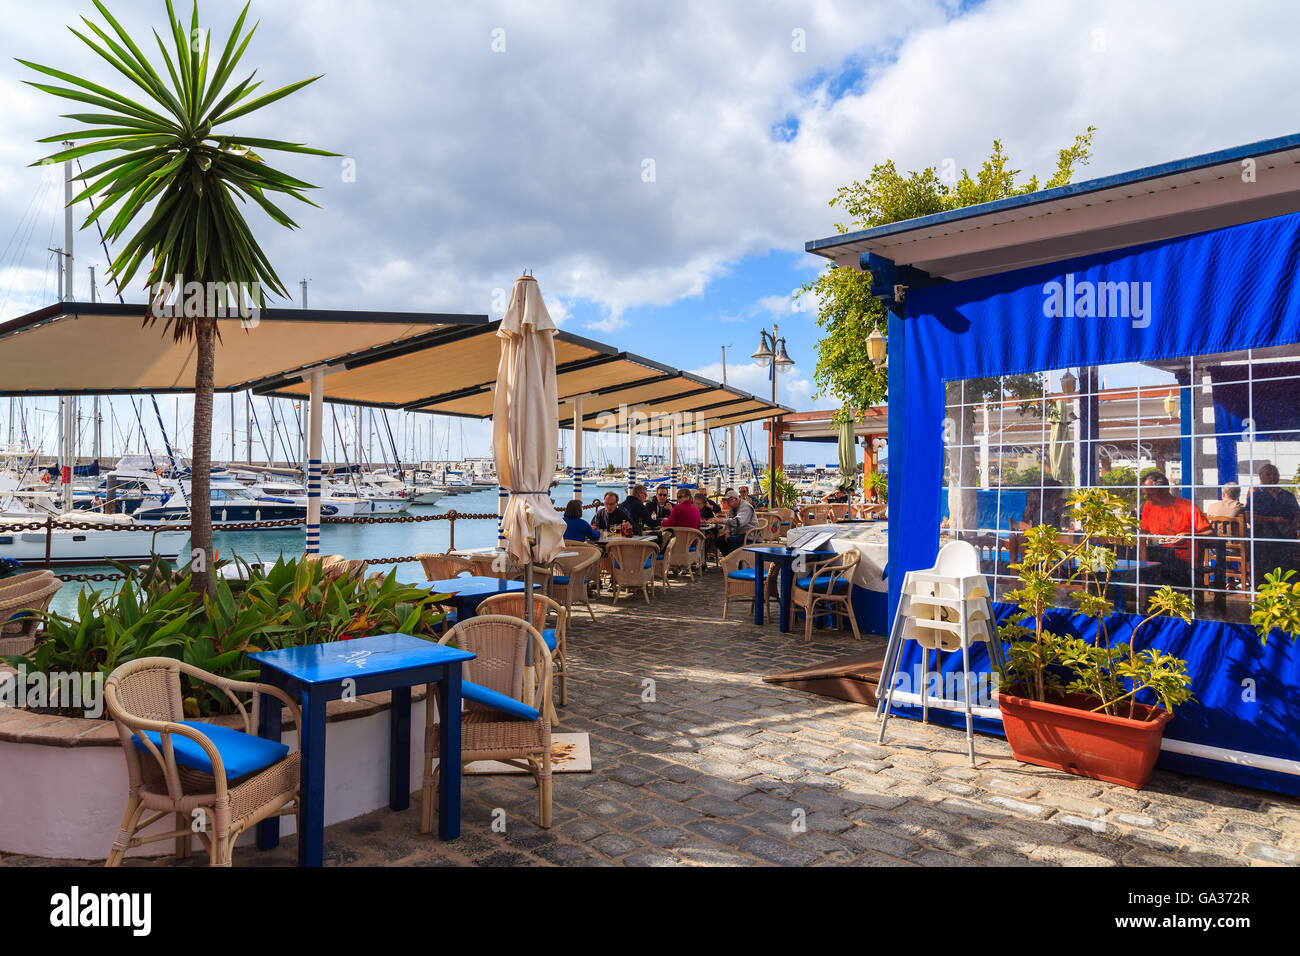 MARINA RUBICON, Insel LANZAROTE - 17. Januar 2015: Restaurant im Hafen mit Restaurants im Yachthafen Rubicon. Lanzarote ist die nördlichste Insel im Archipel der Kanarischen Inseln. Stockfoto